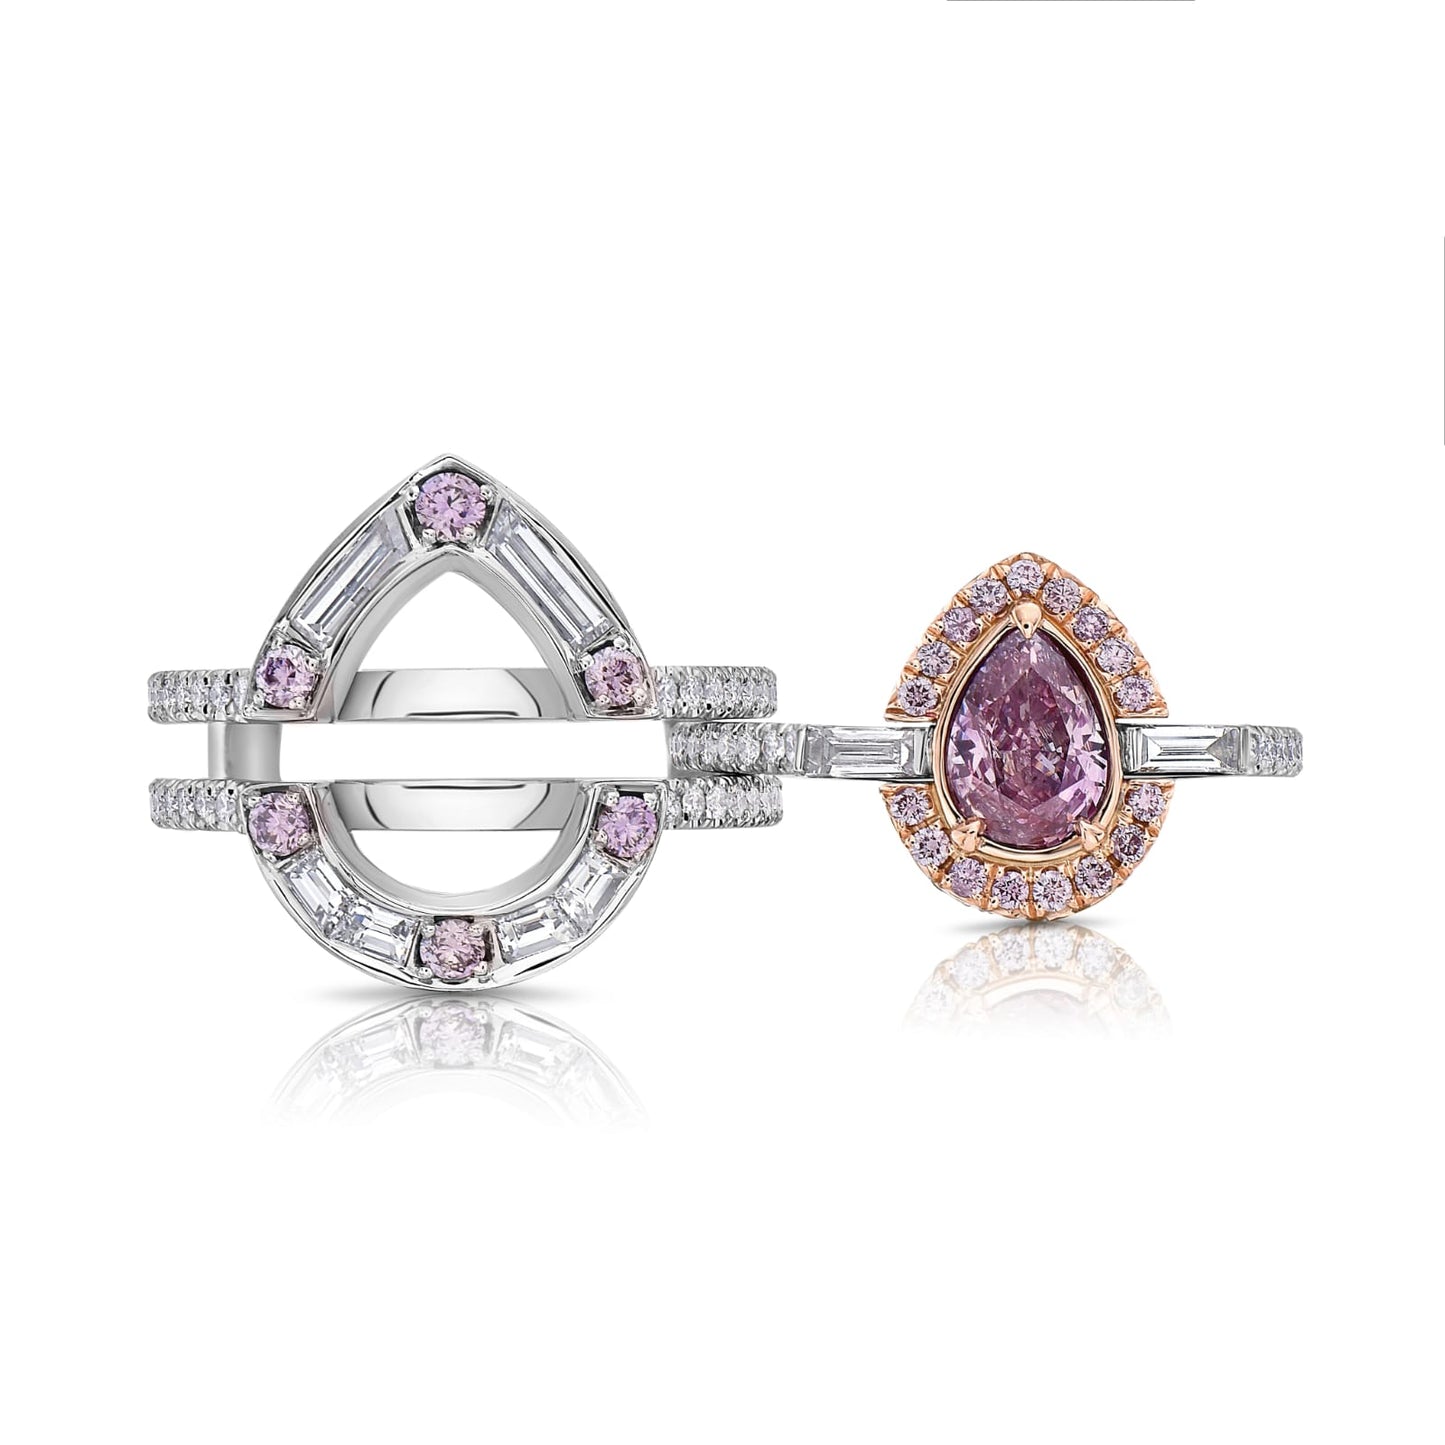 Fancy intense purple pink diamond ring. fancy intense purple pink diamond